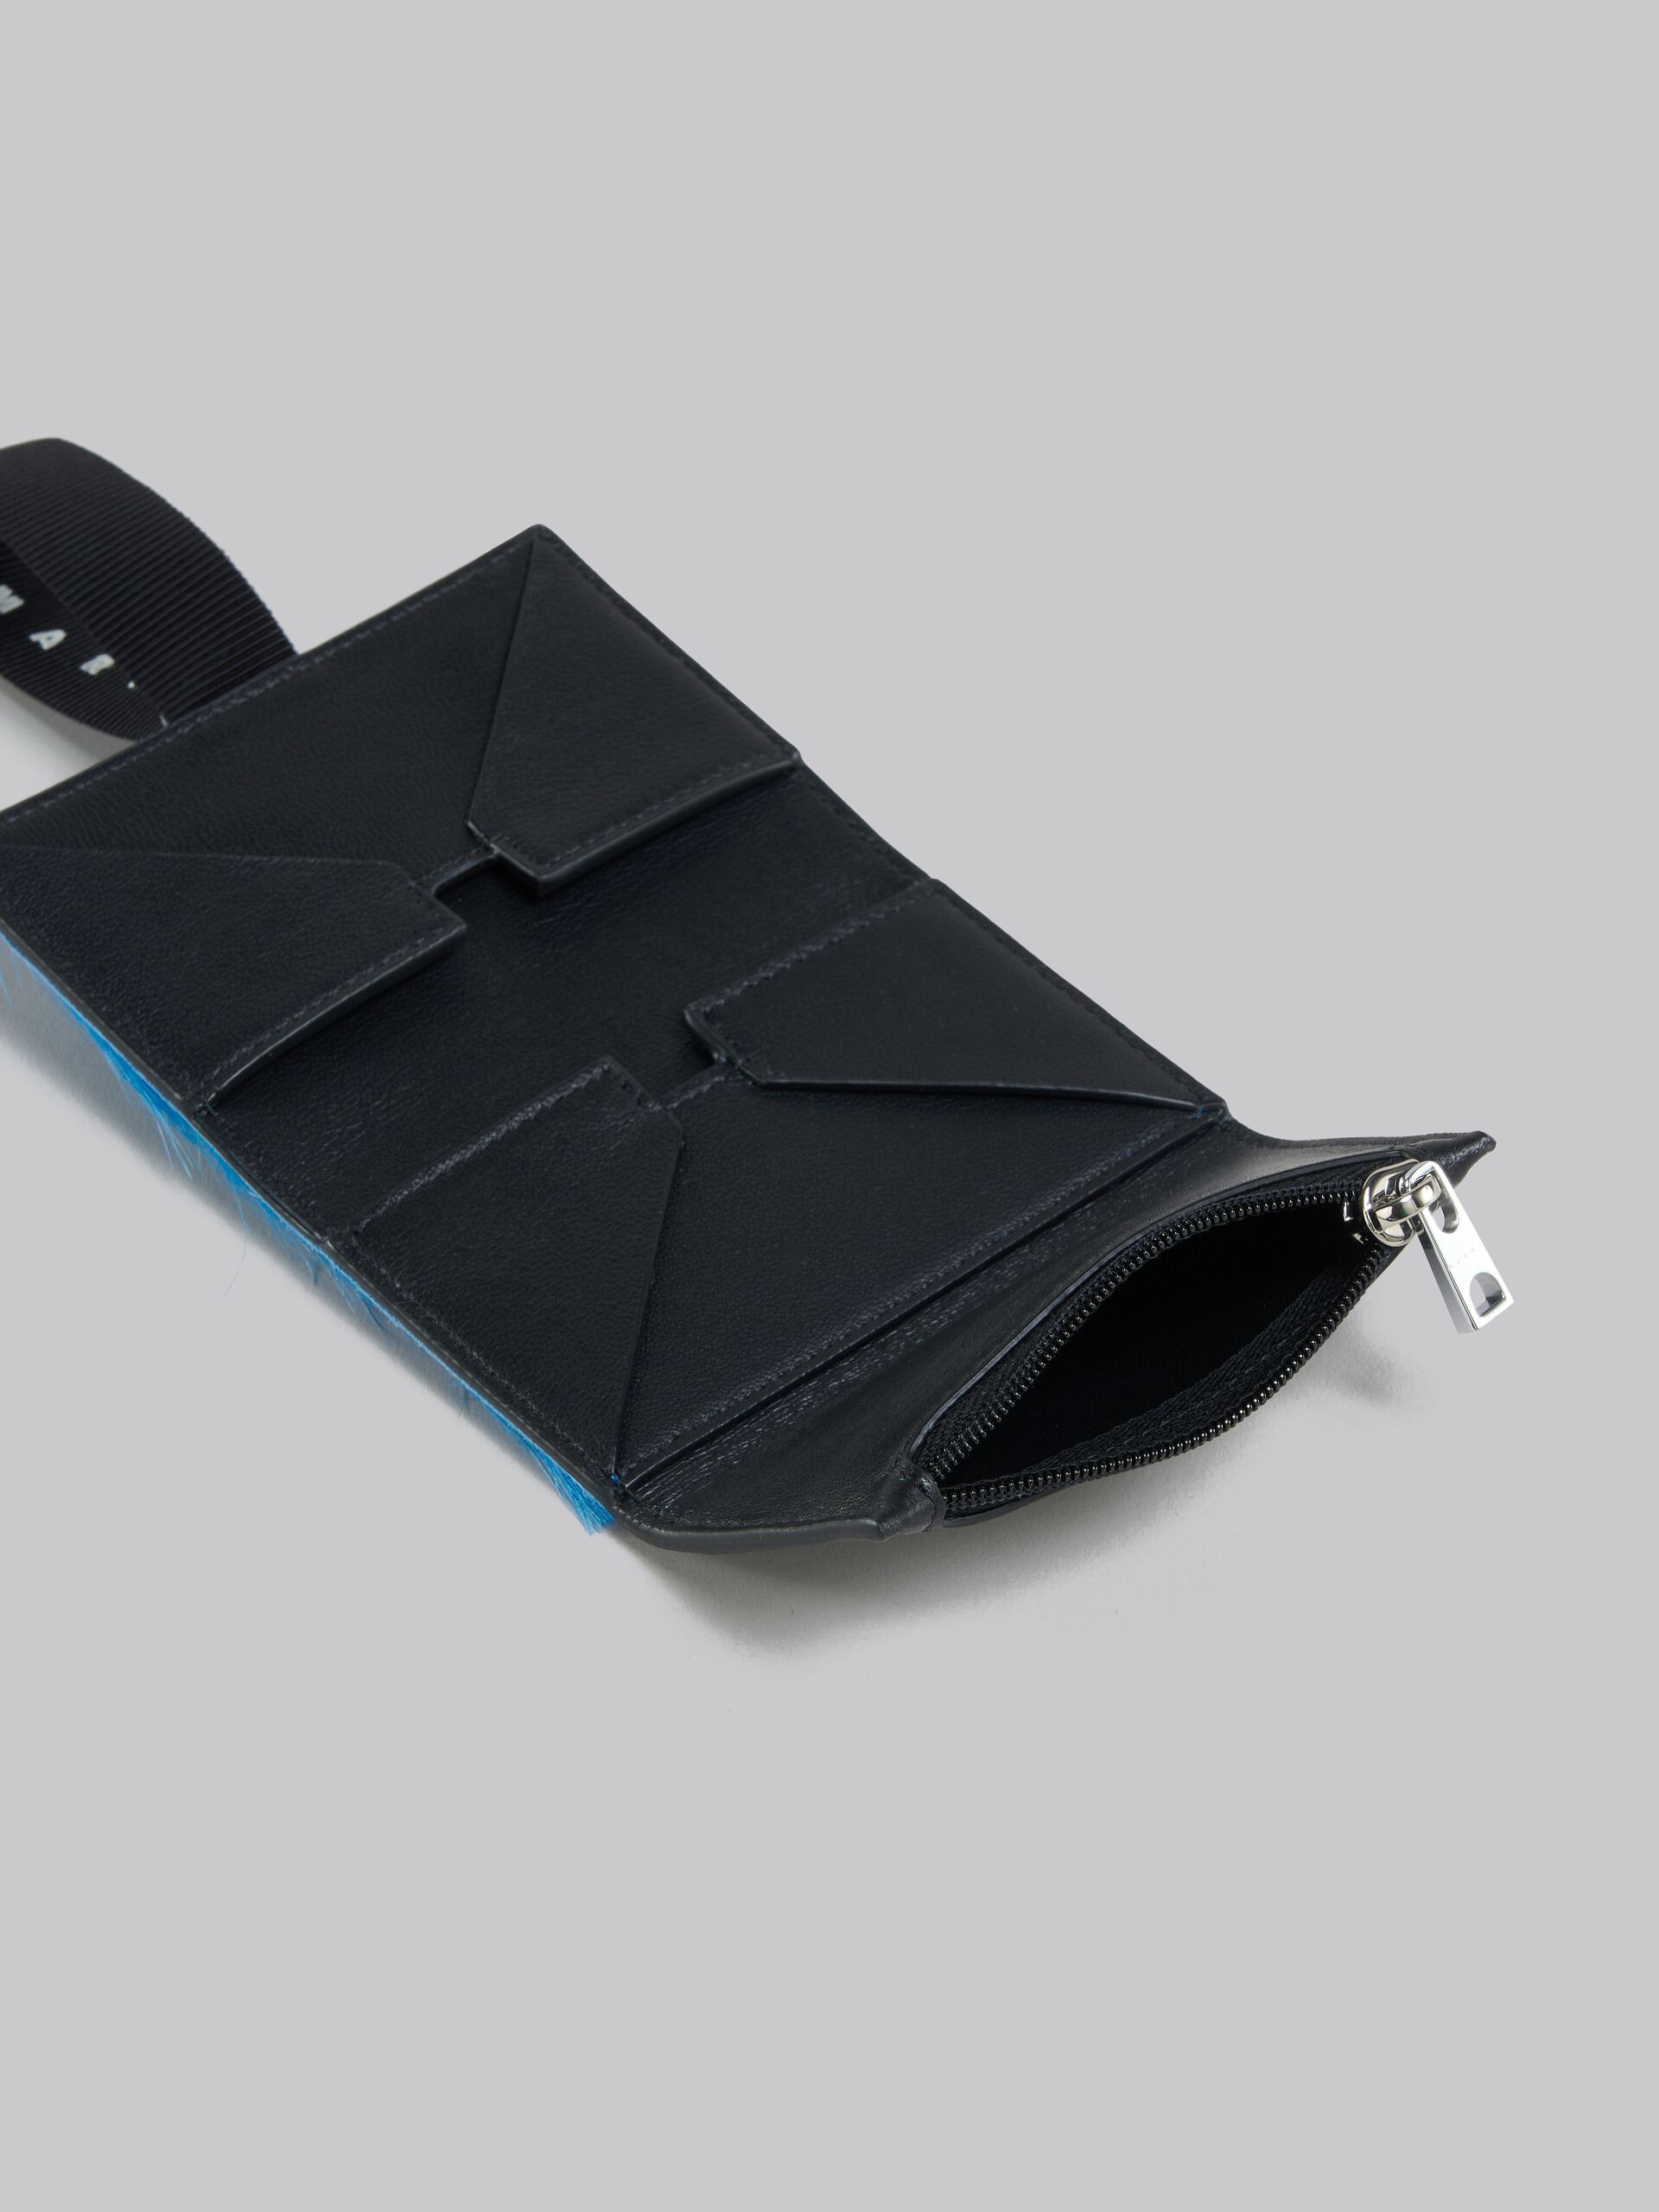 ブルー ロングヘアーカーフスキン製 三つ折りウォレット、ロゴストラップ付き - 財布 - Image 2